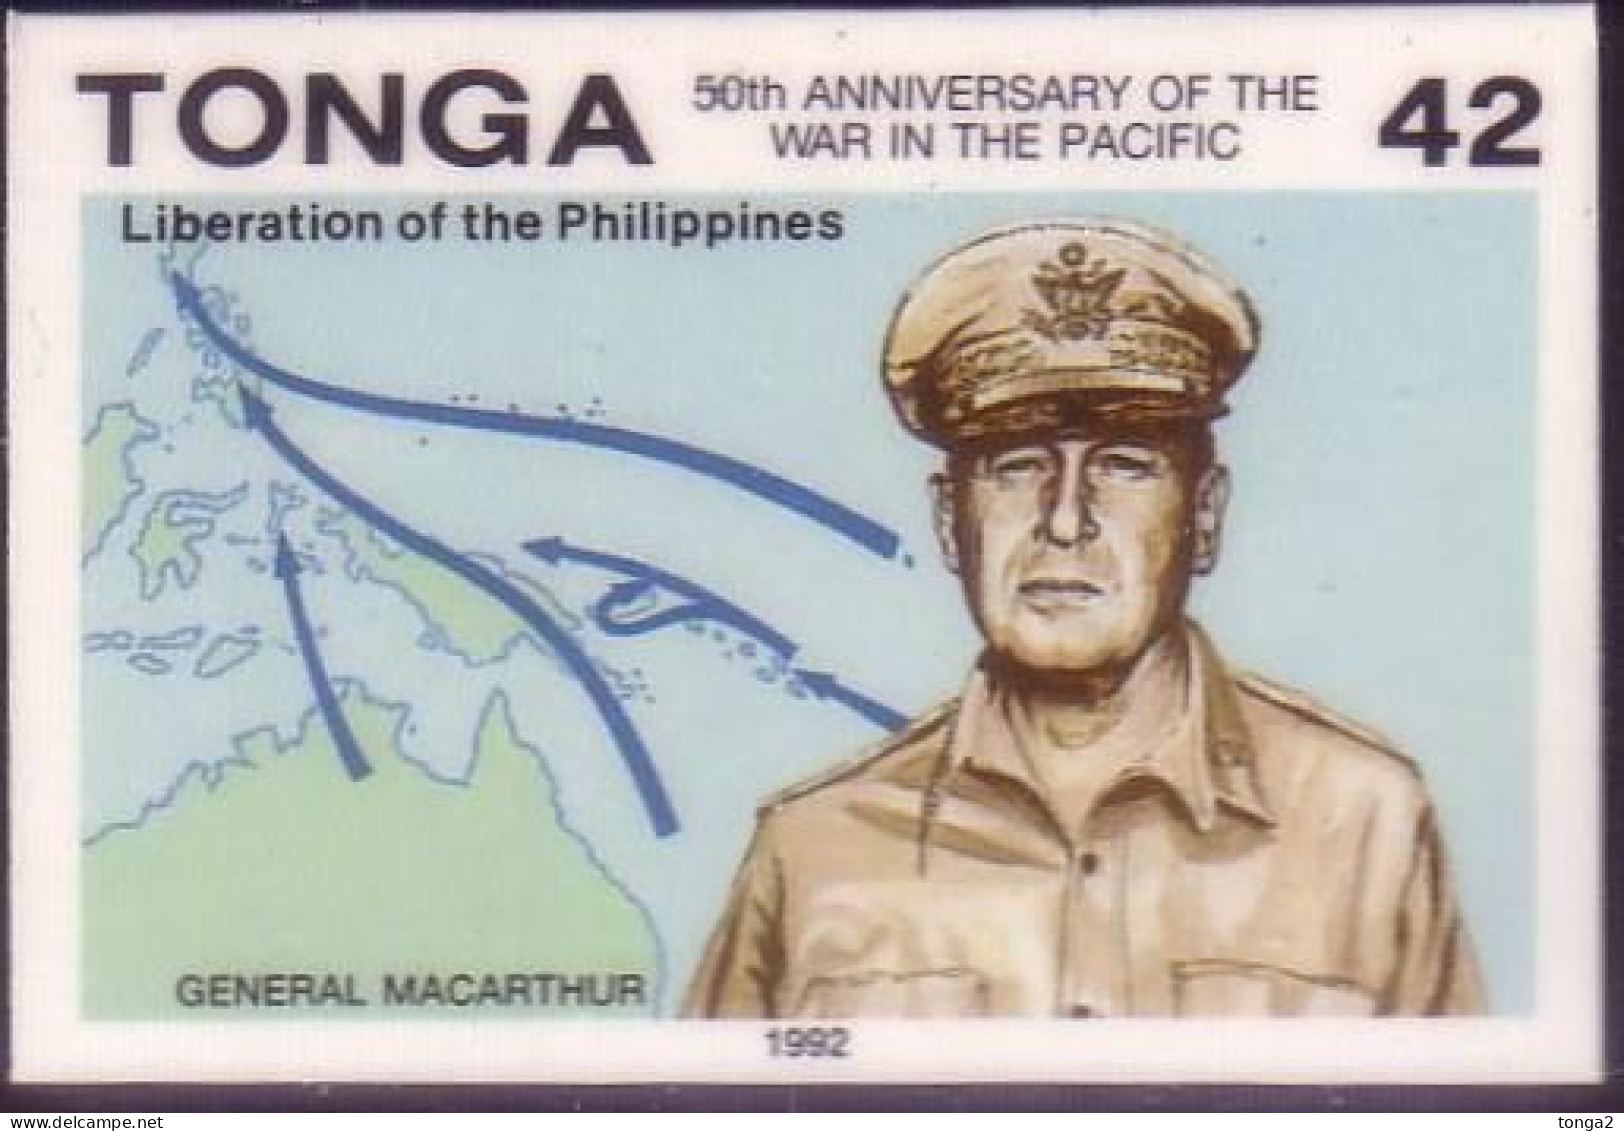 TONGA 1992 Cromalin Proof - Gen Macarthur, Liberation Of Philippines - War Map  - 4 Exist - Tonga (1970-...)